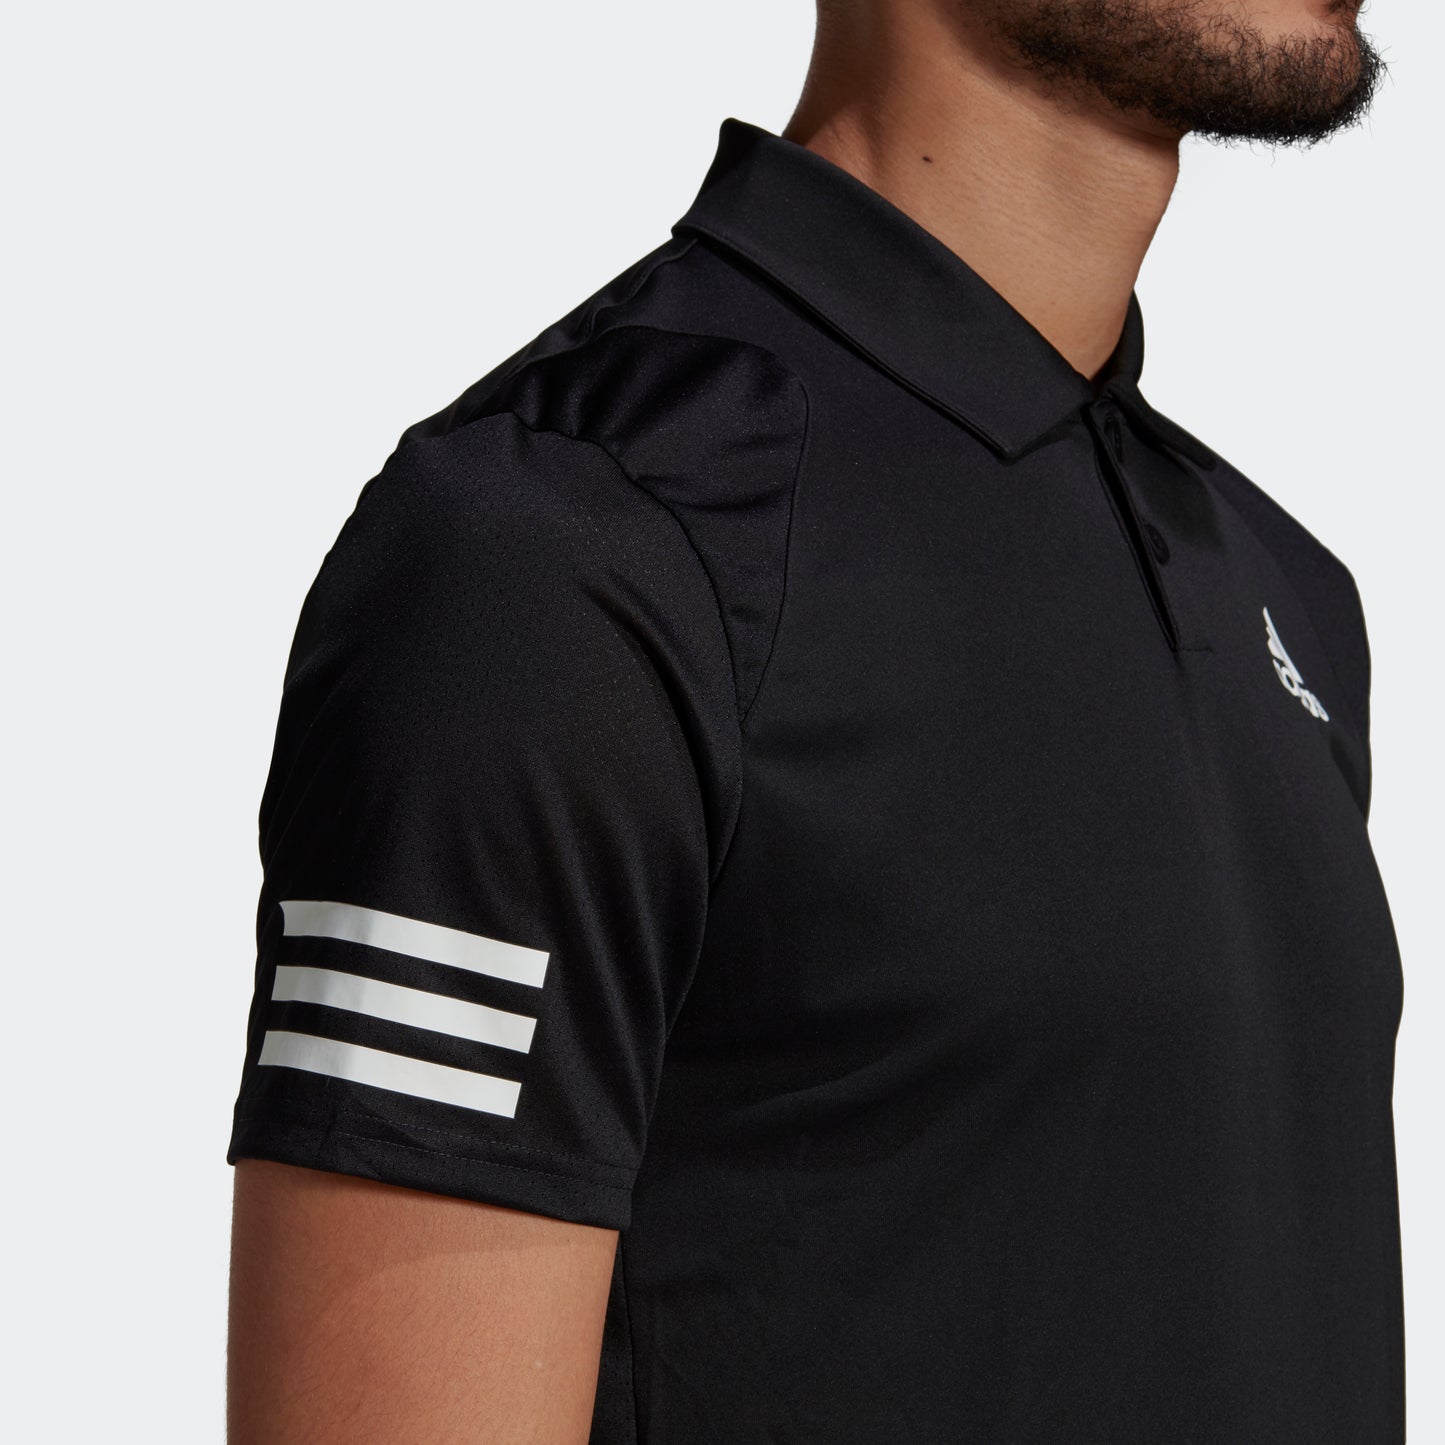 adidas TENNIS CLUB 3-STRIPES Polo Shirt | Black | Men's